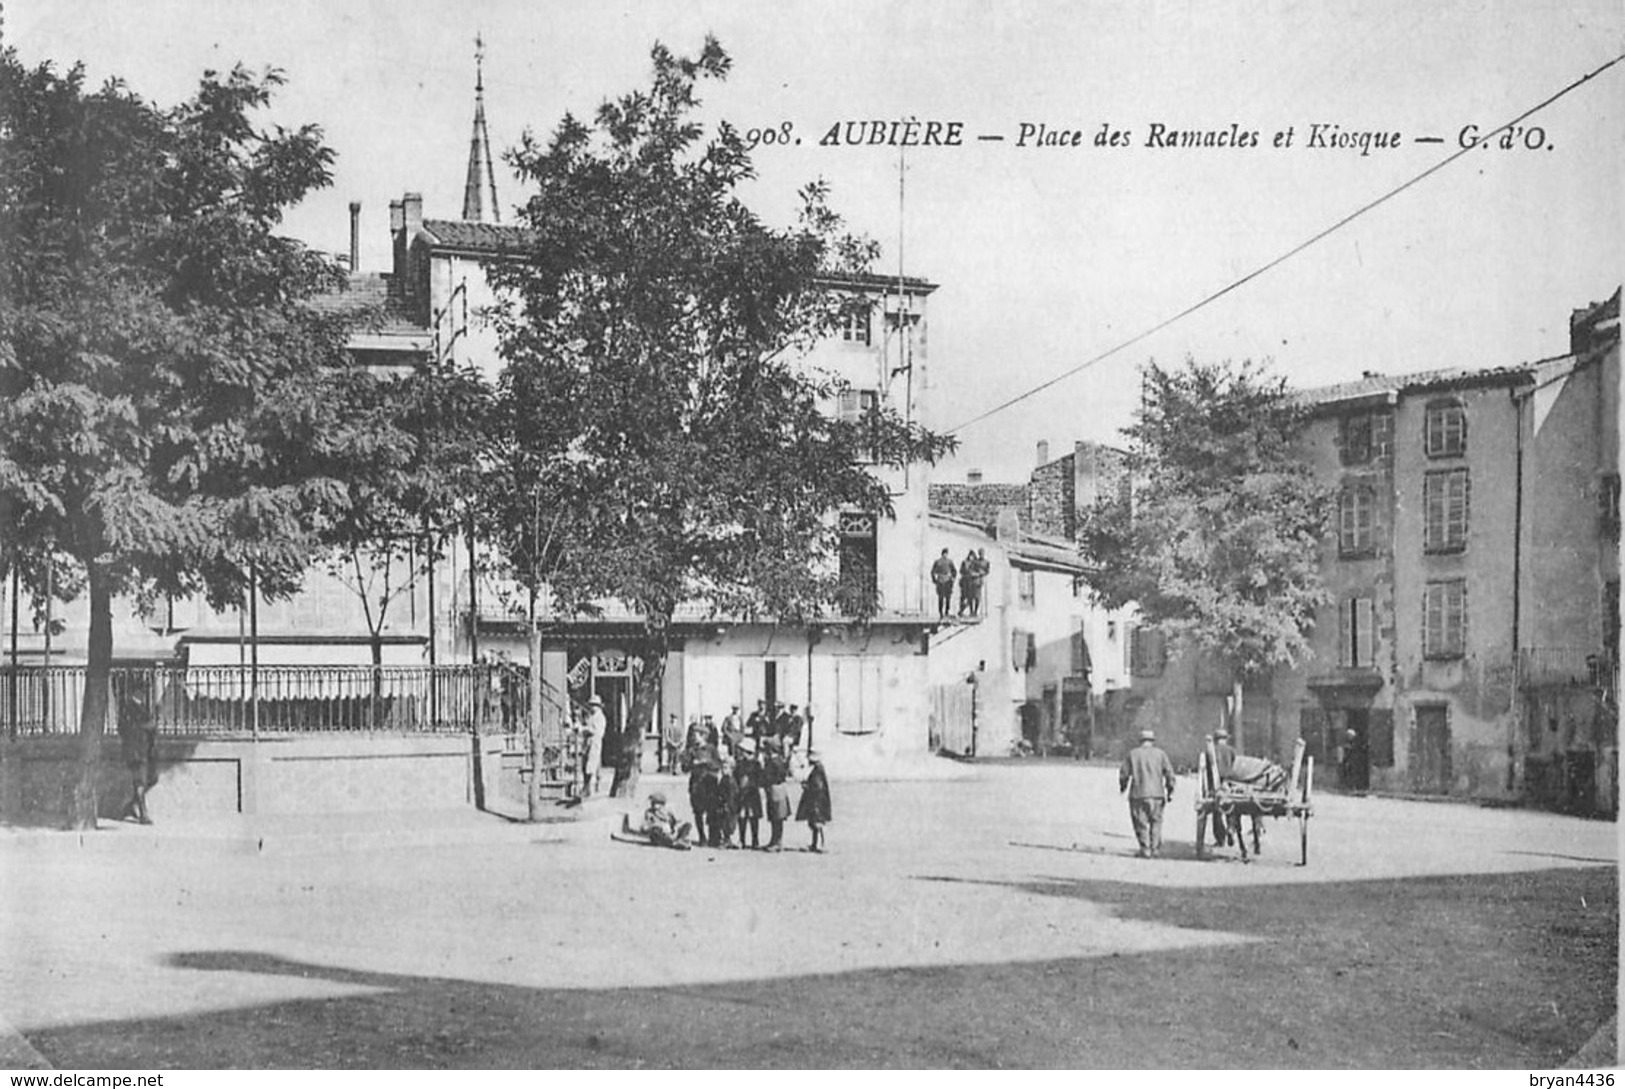 63 - AUBIERE - LE KIOSQUE PLACE DES RAMACLES - édit, G.d'O. N° 908. - Aubiere